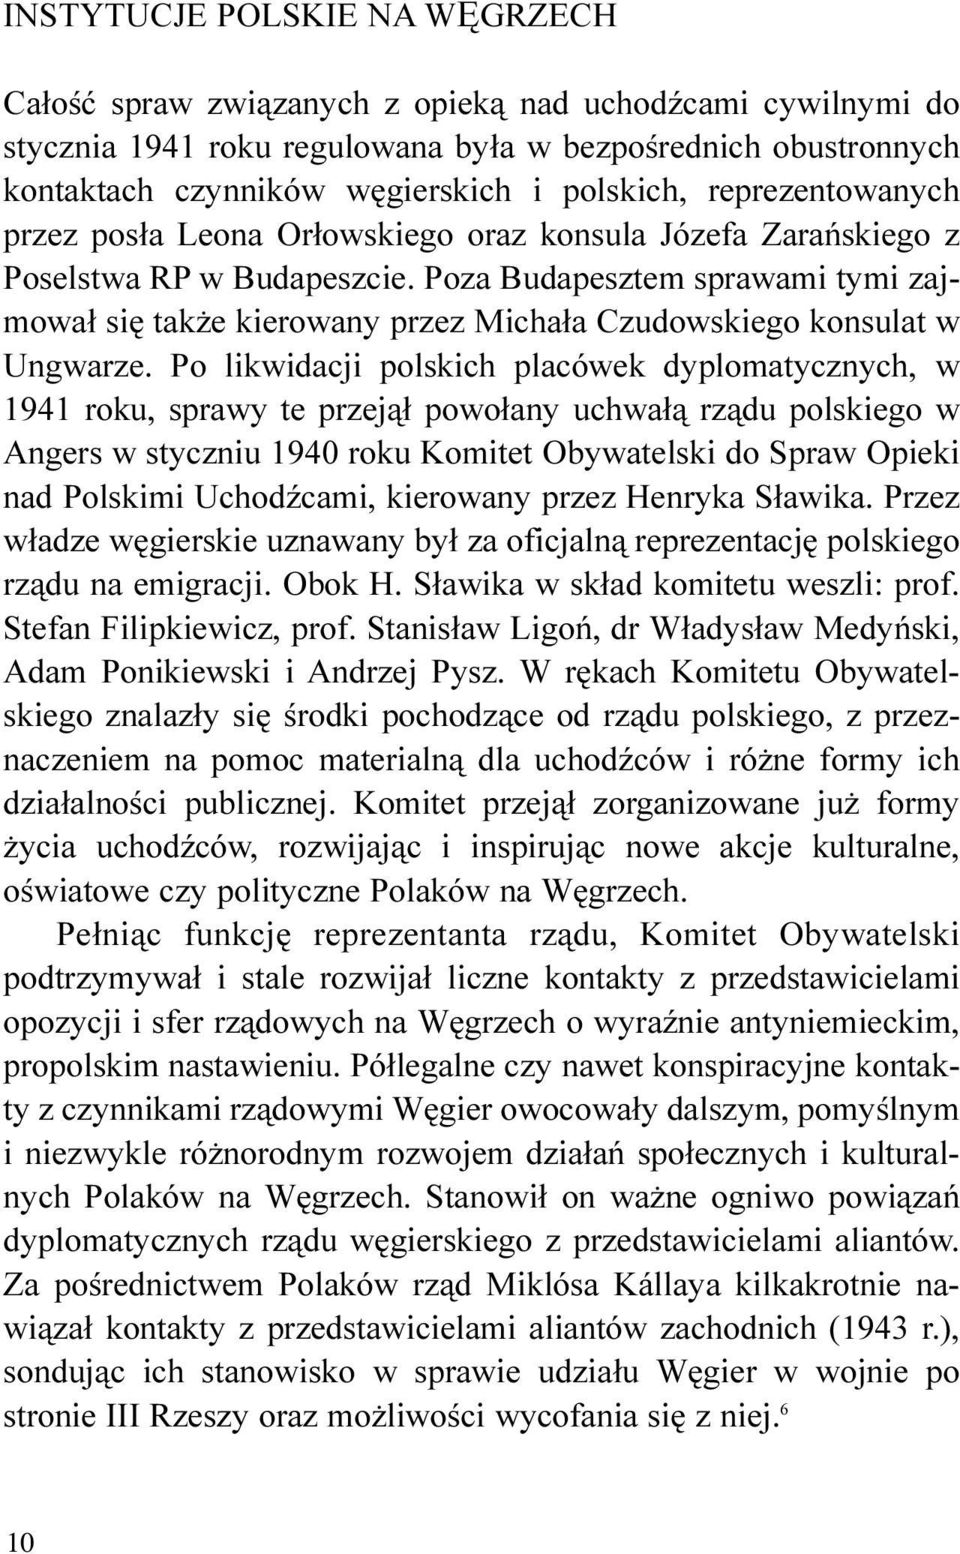 Poza Budapesztem sprawami tymi zajmowa³ siê tak e kierowany przez Micha³a Czudowskiego konsulat w Ungwarze.